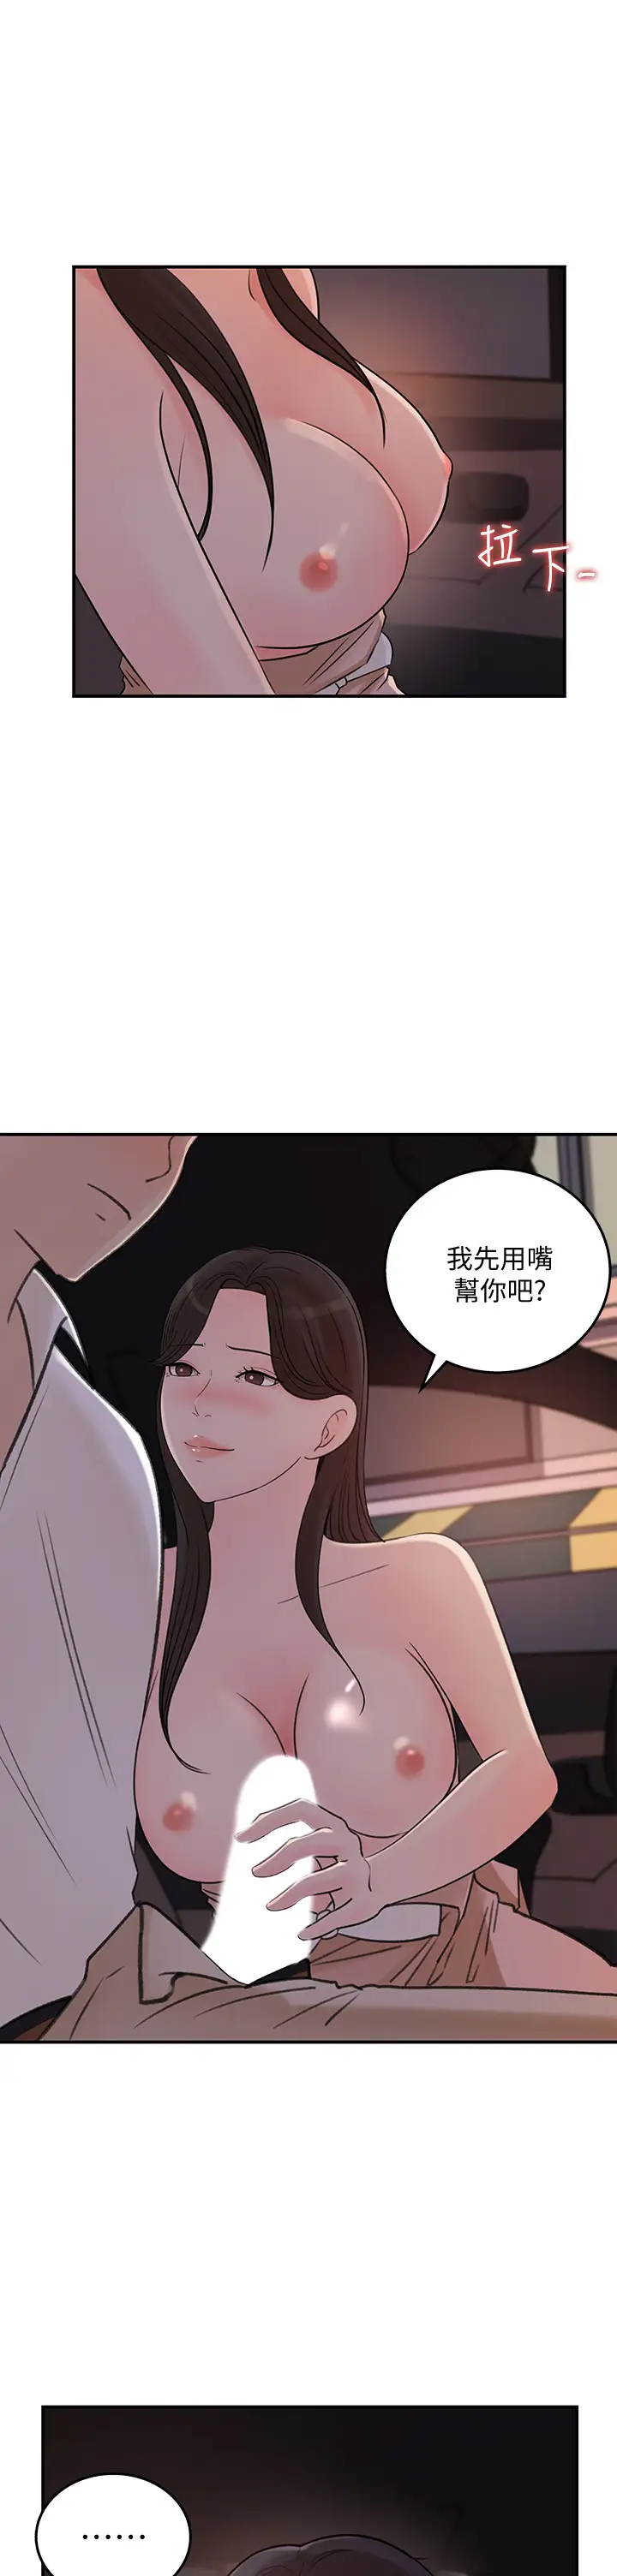 韩国污漫画 女神收藏清單 第33话车内的炙热喘息 9